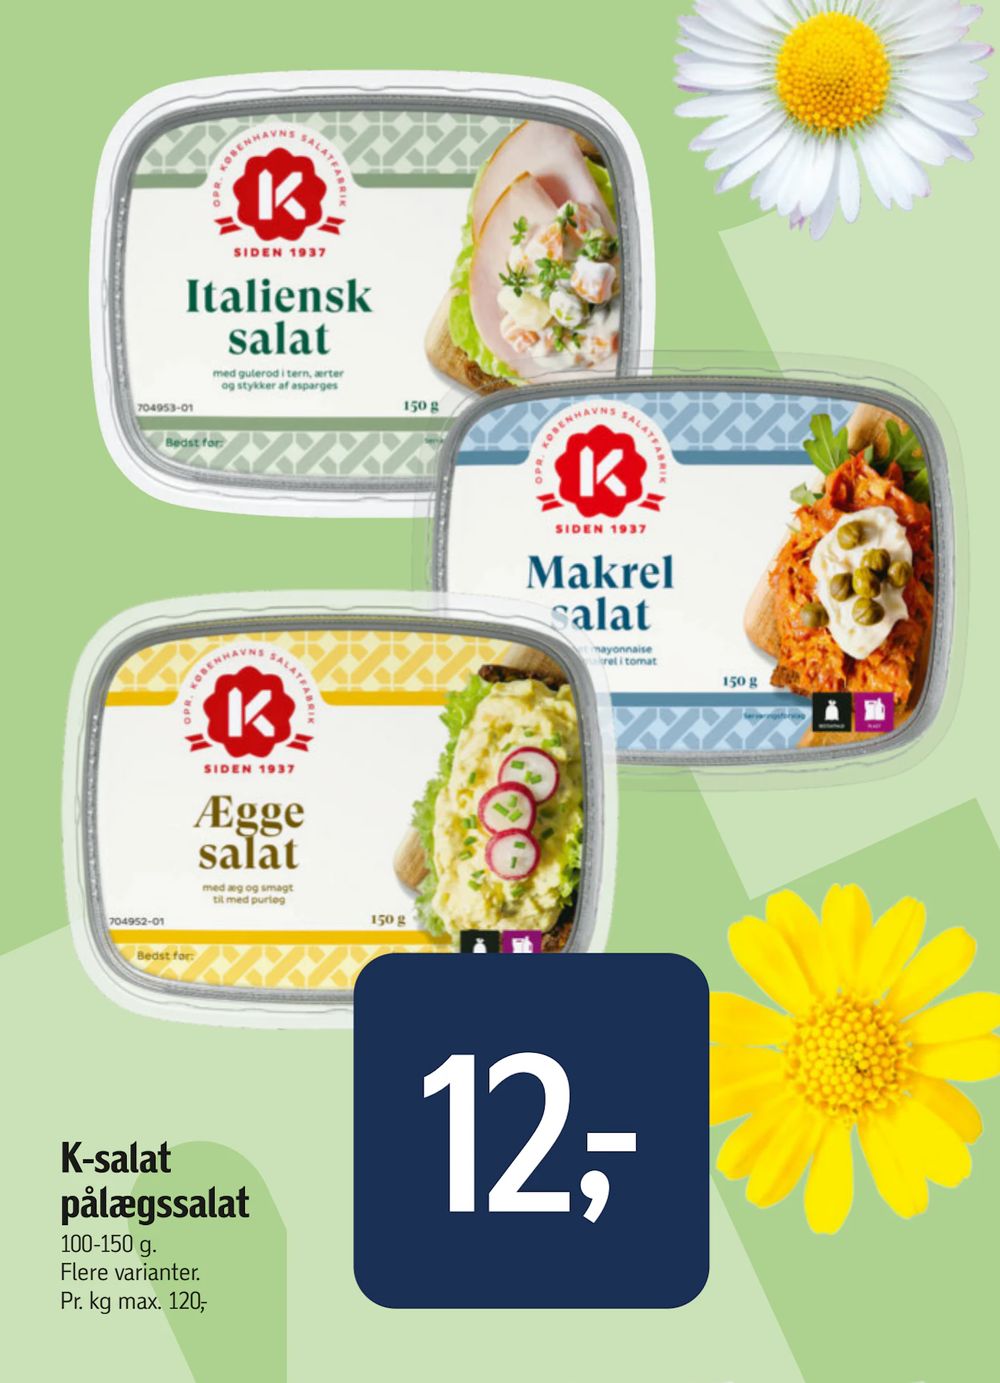 Tilbud på K-salat pålægssalat fra føtex til 12 kr.